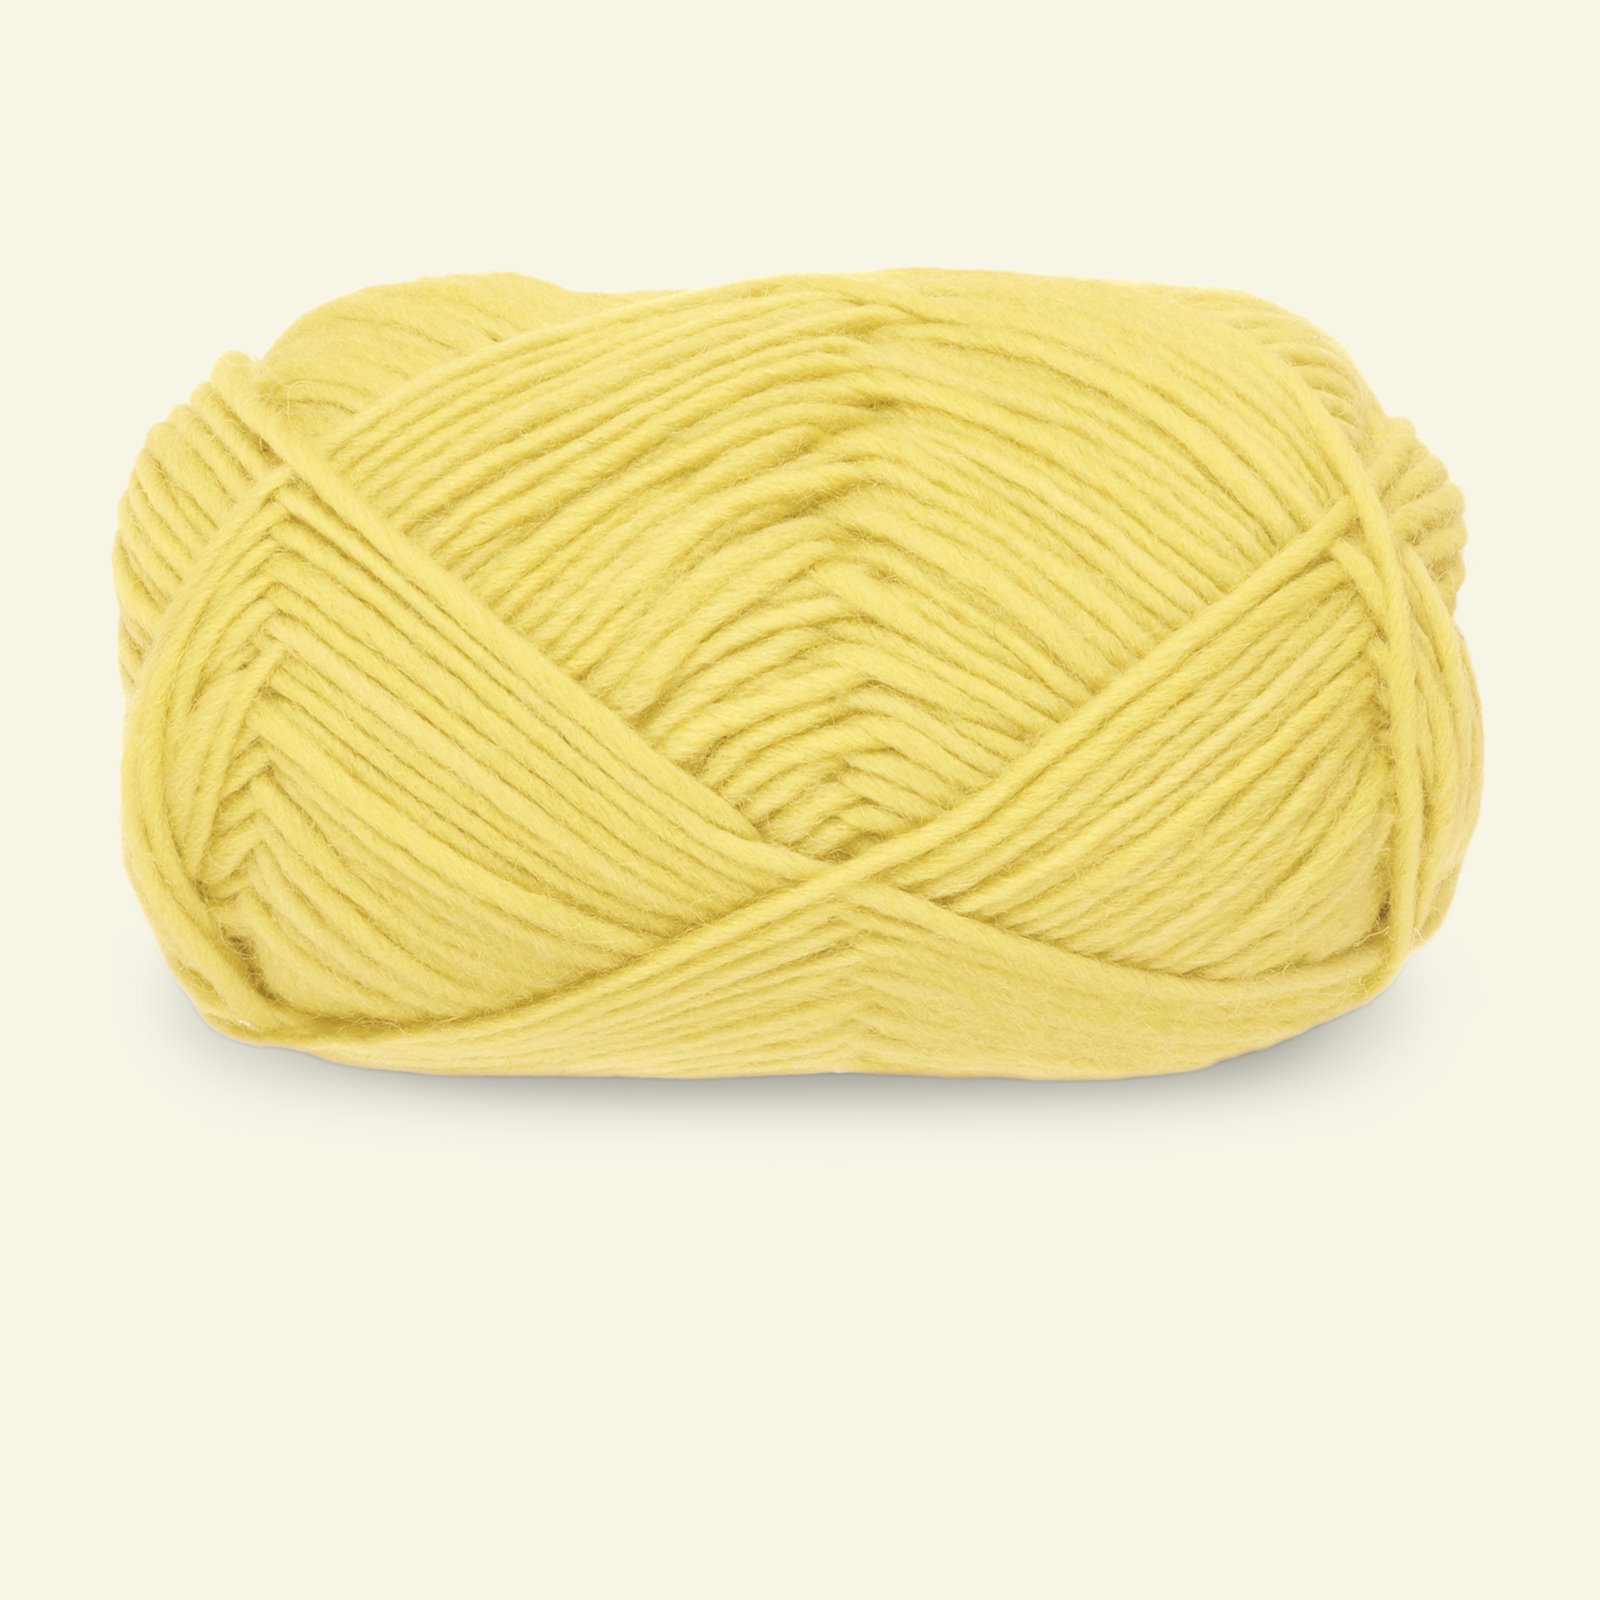 Dale Garn, 100% wool yarn Older, pink (418)